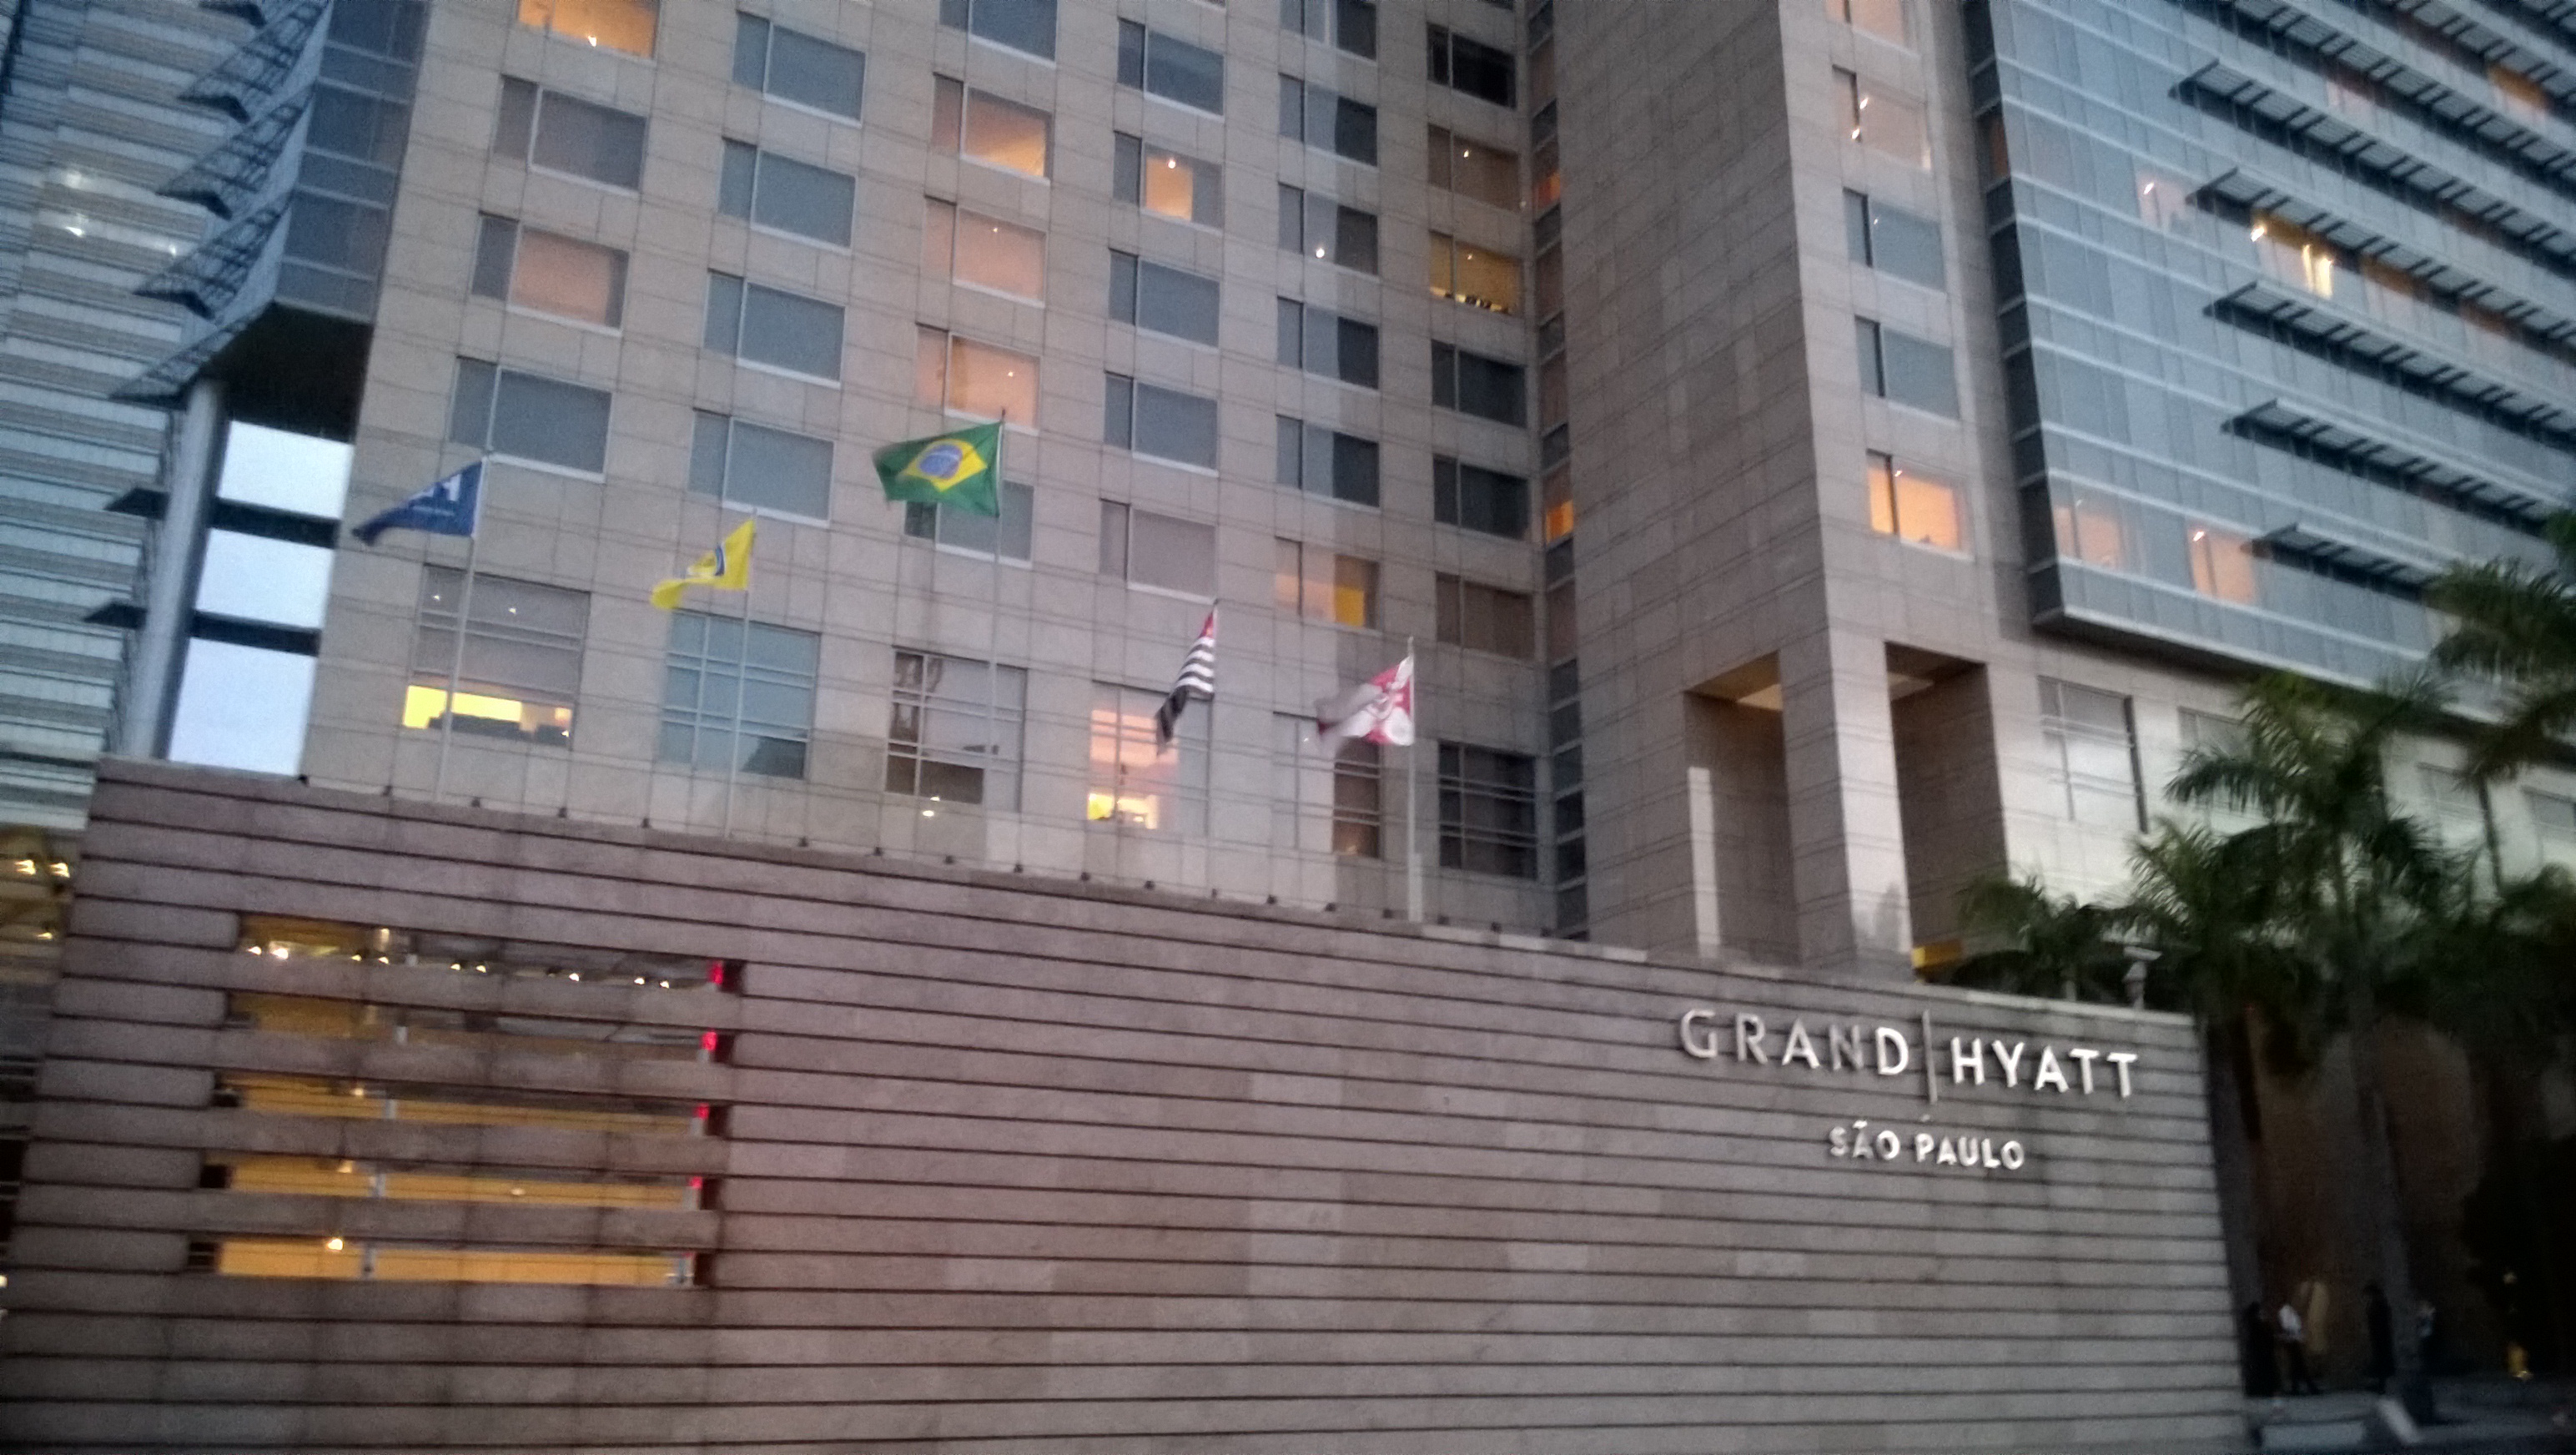 Das Grand Hyatt Hotel spiegelt das Selbstverständnis der Fifa wider. (Bild: T. Zwior)